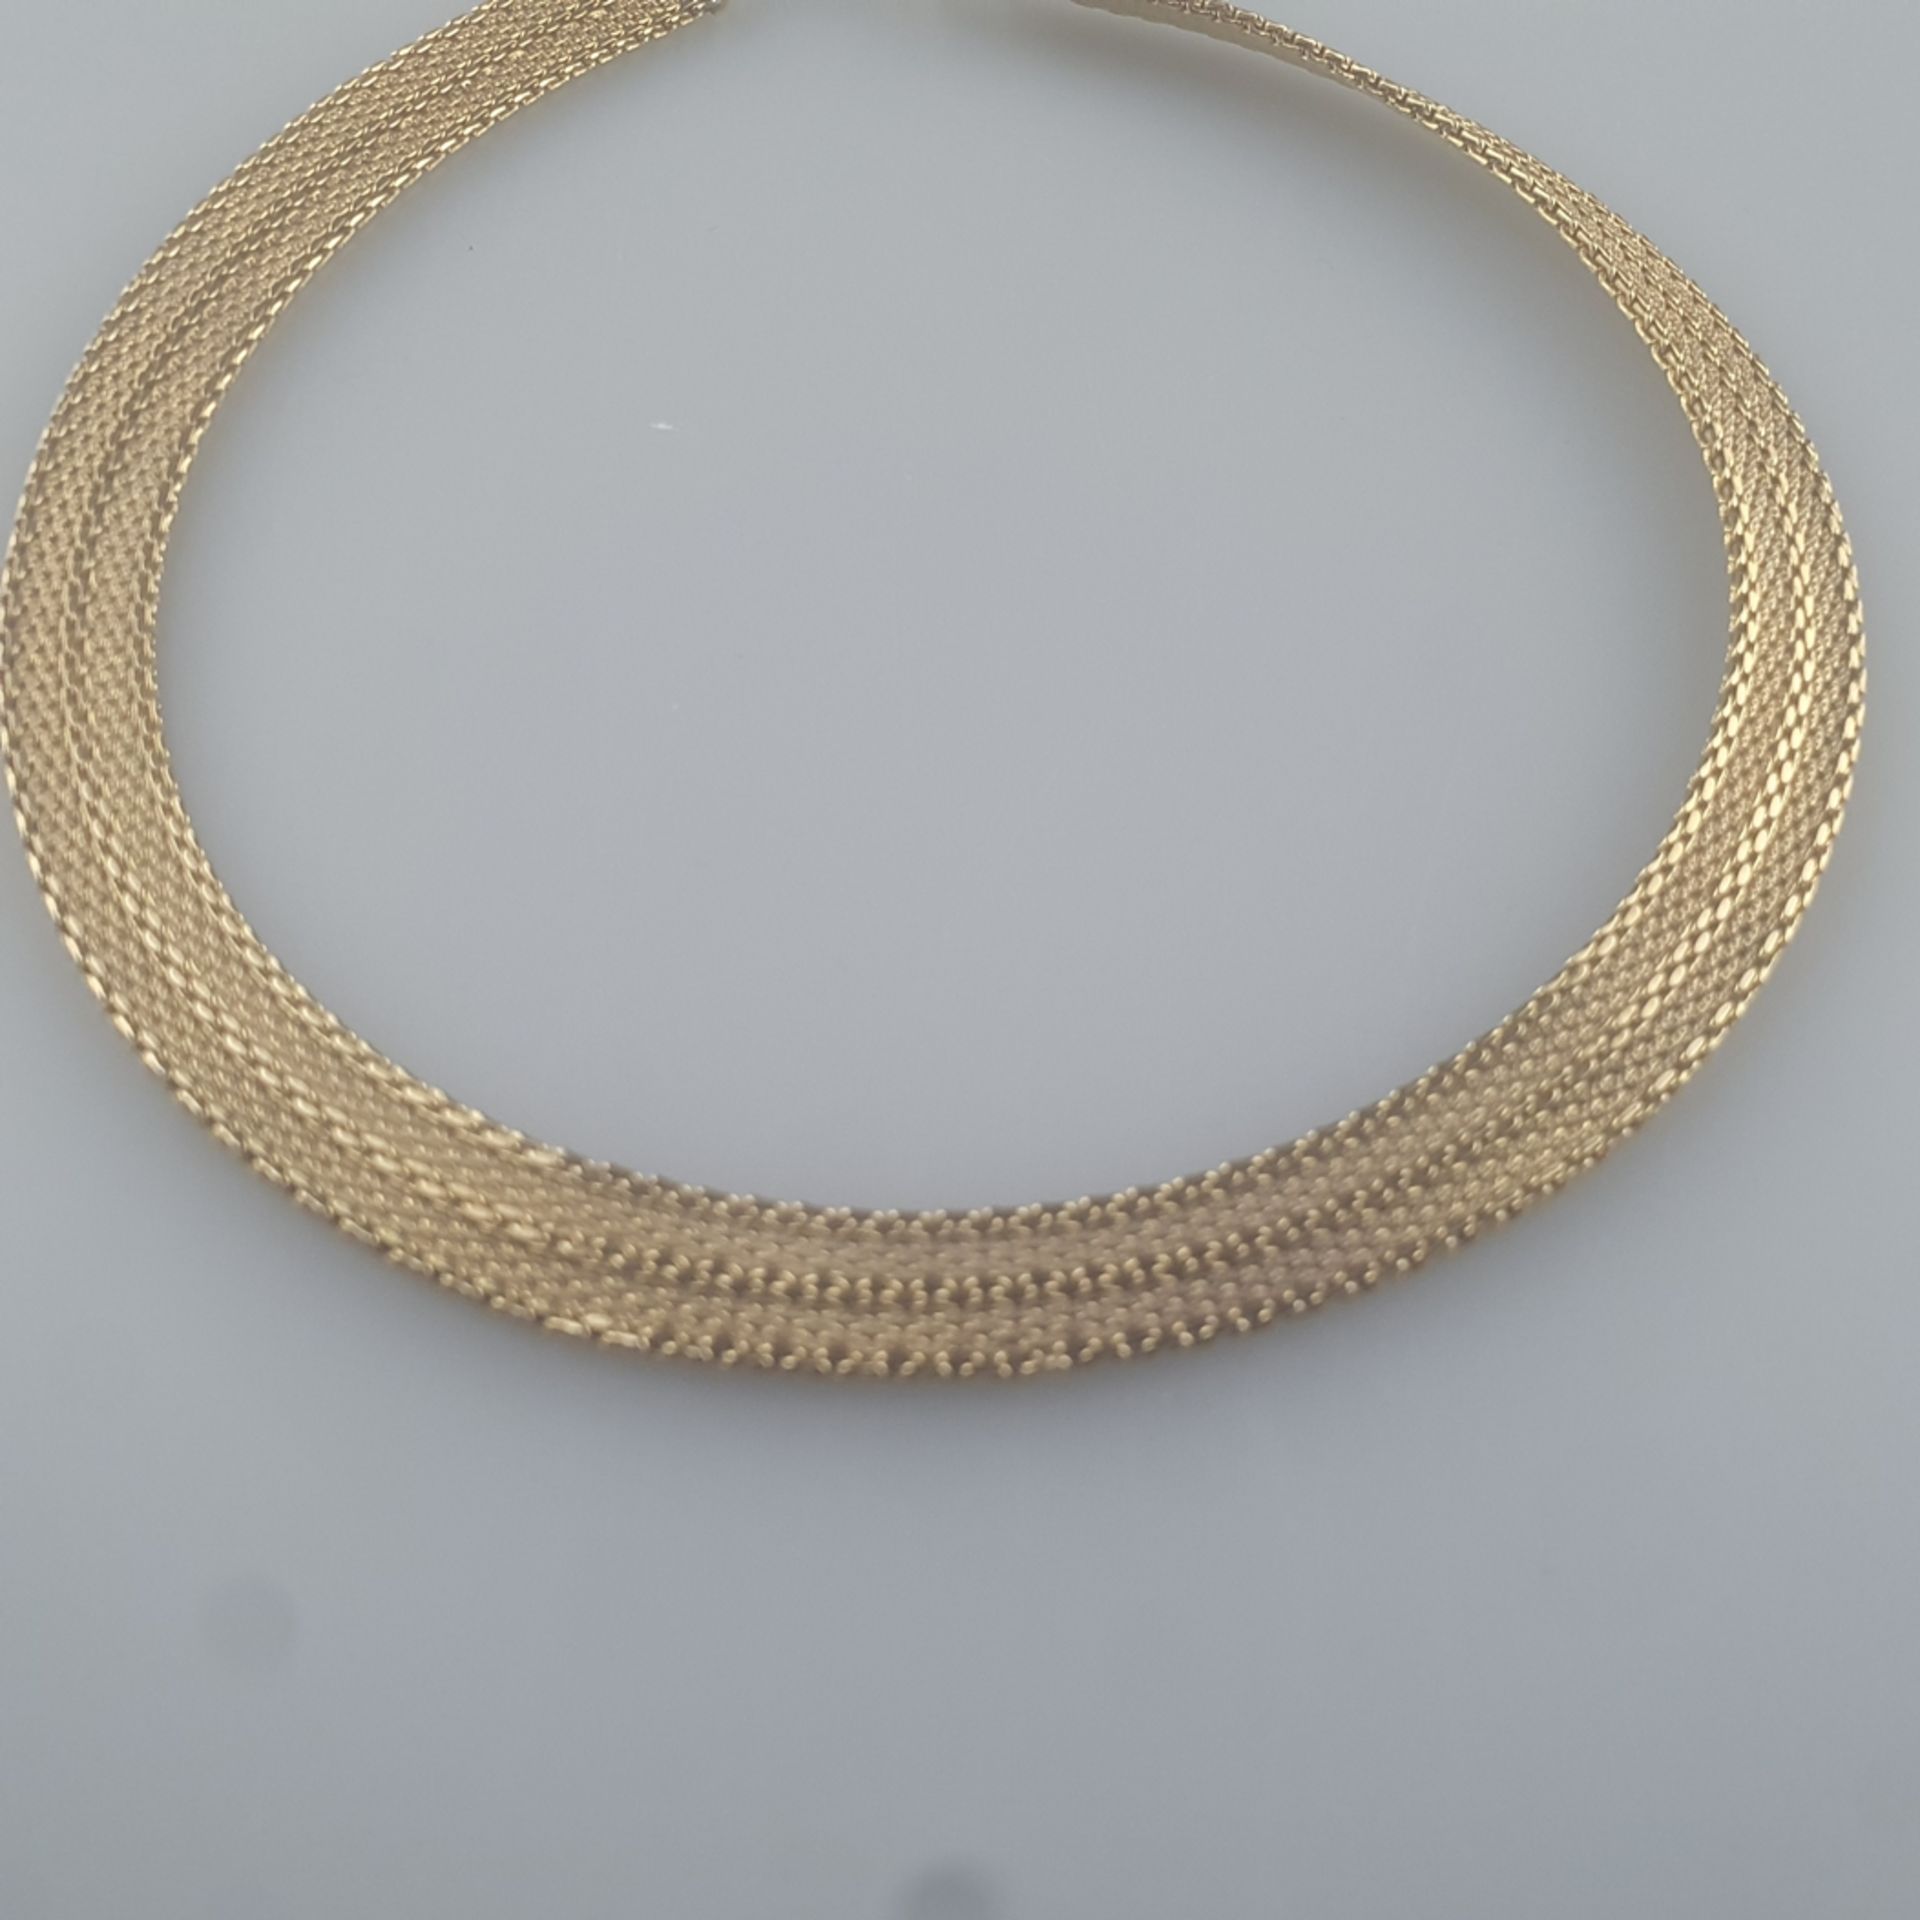 Vintage-Collier - Henkel & Grosse (Pforzheim), vergoldetes Metall, flexibles Flechtband mit Karabin - Bild 4 aus 5